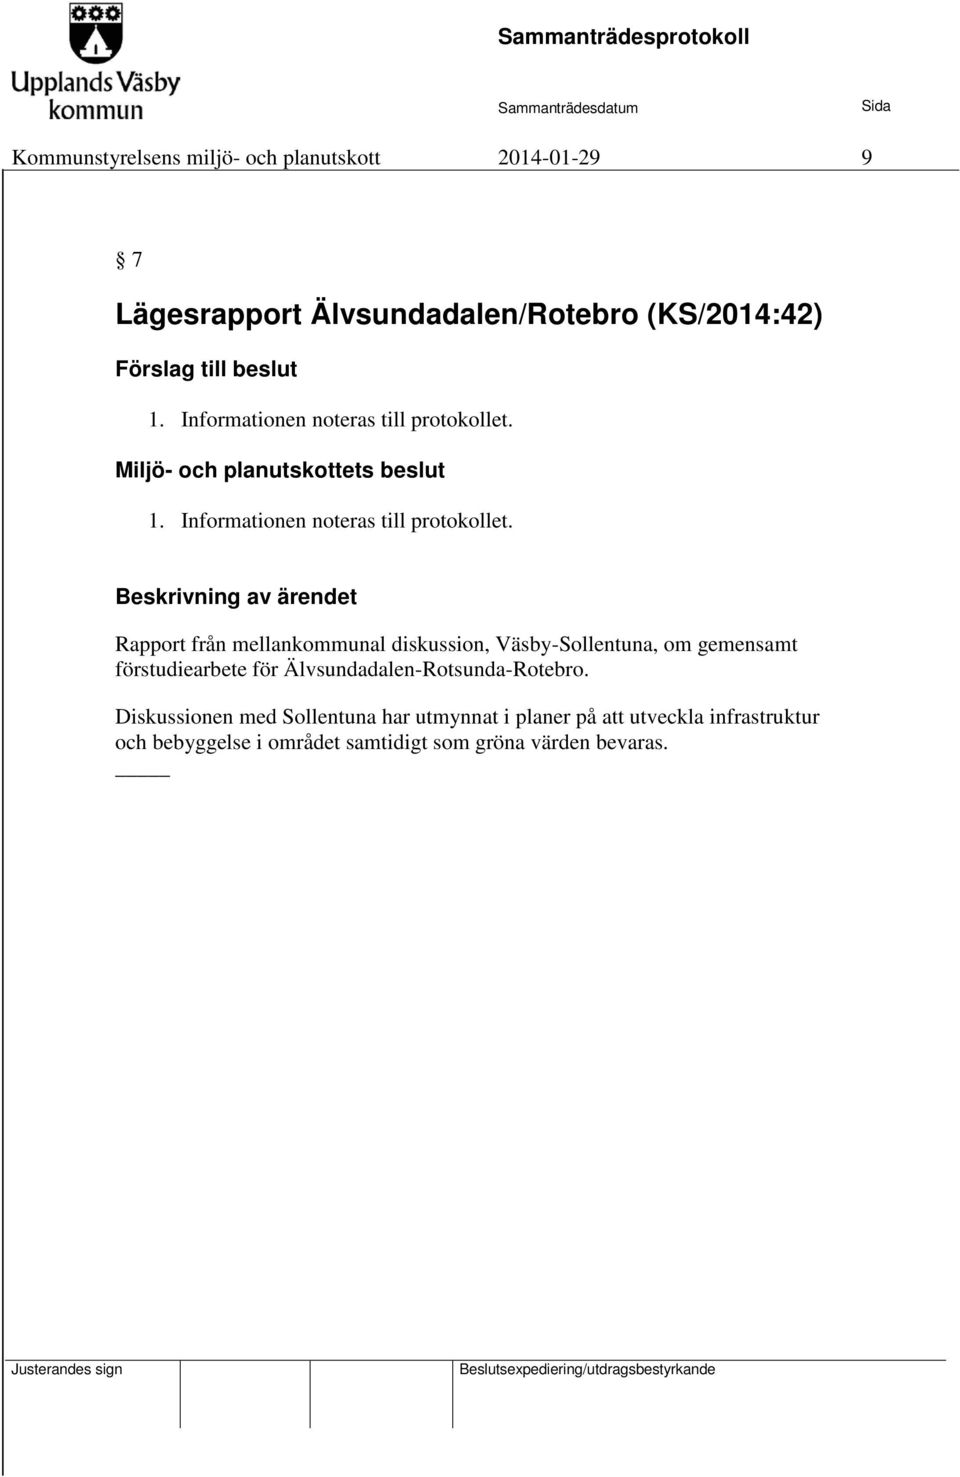 1. Rapport från mellankommunal diskussion, Väsby-Sollentuna, om gemensamt förstudiearbete